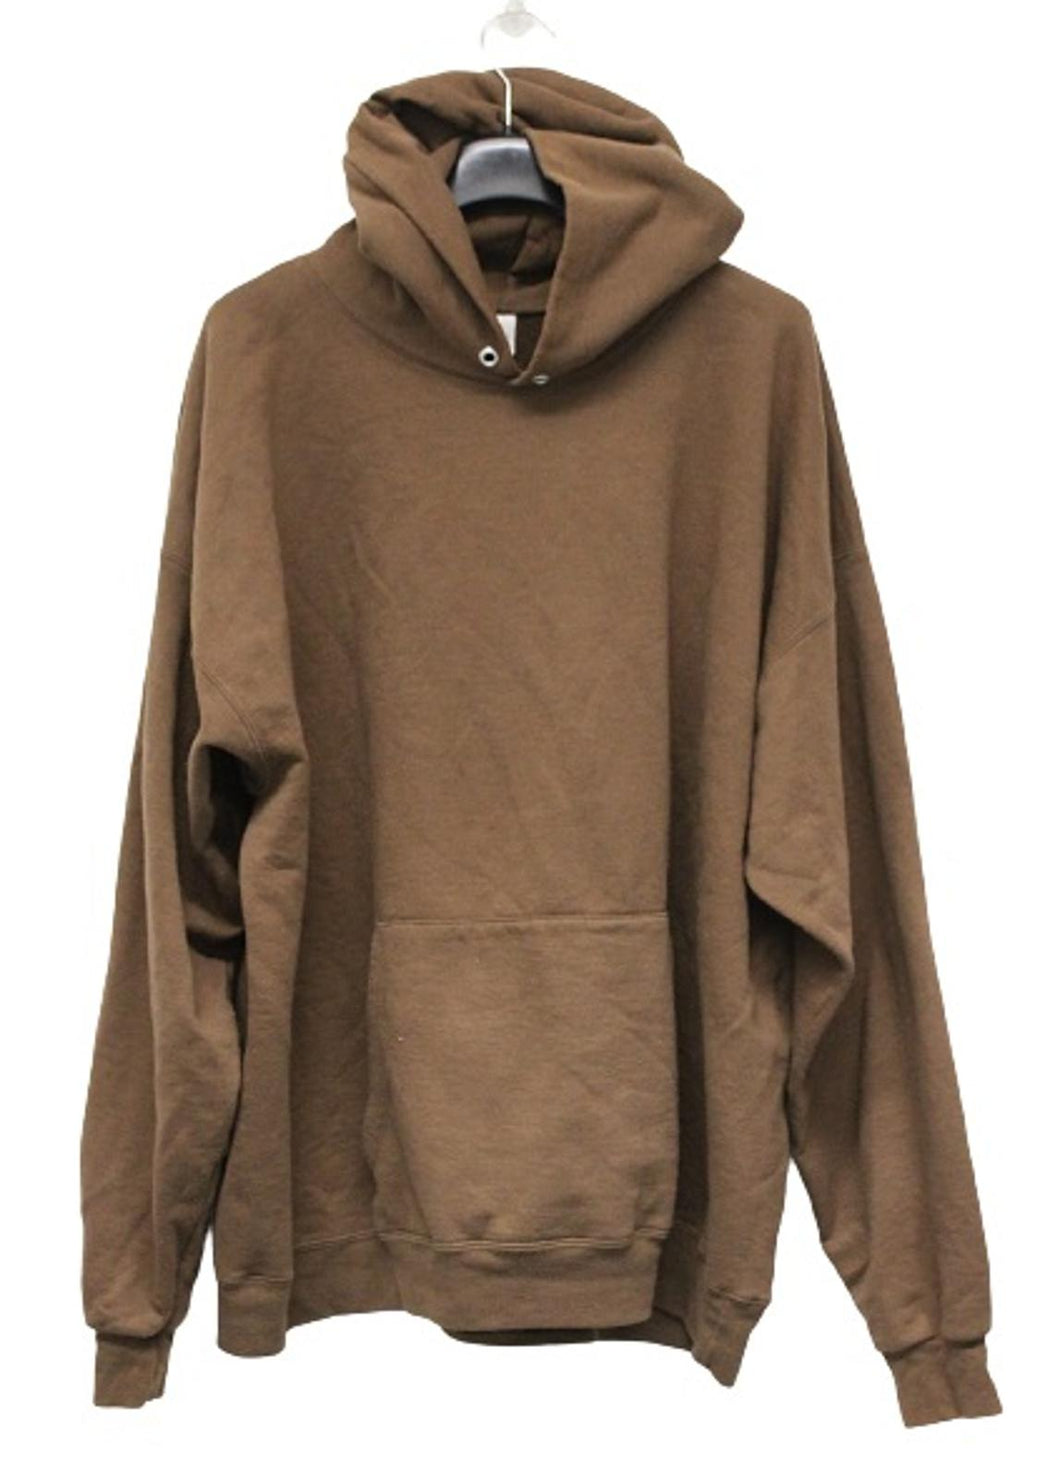 HANES Men's EcoSmart Brown Cotton Blend Pullover Fleece Hoodie Sweatshirt 2XL